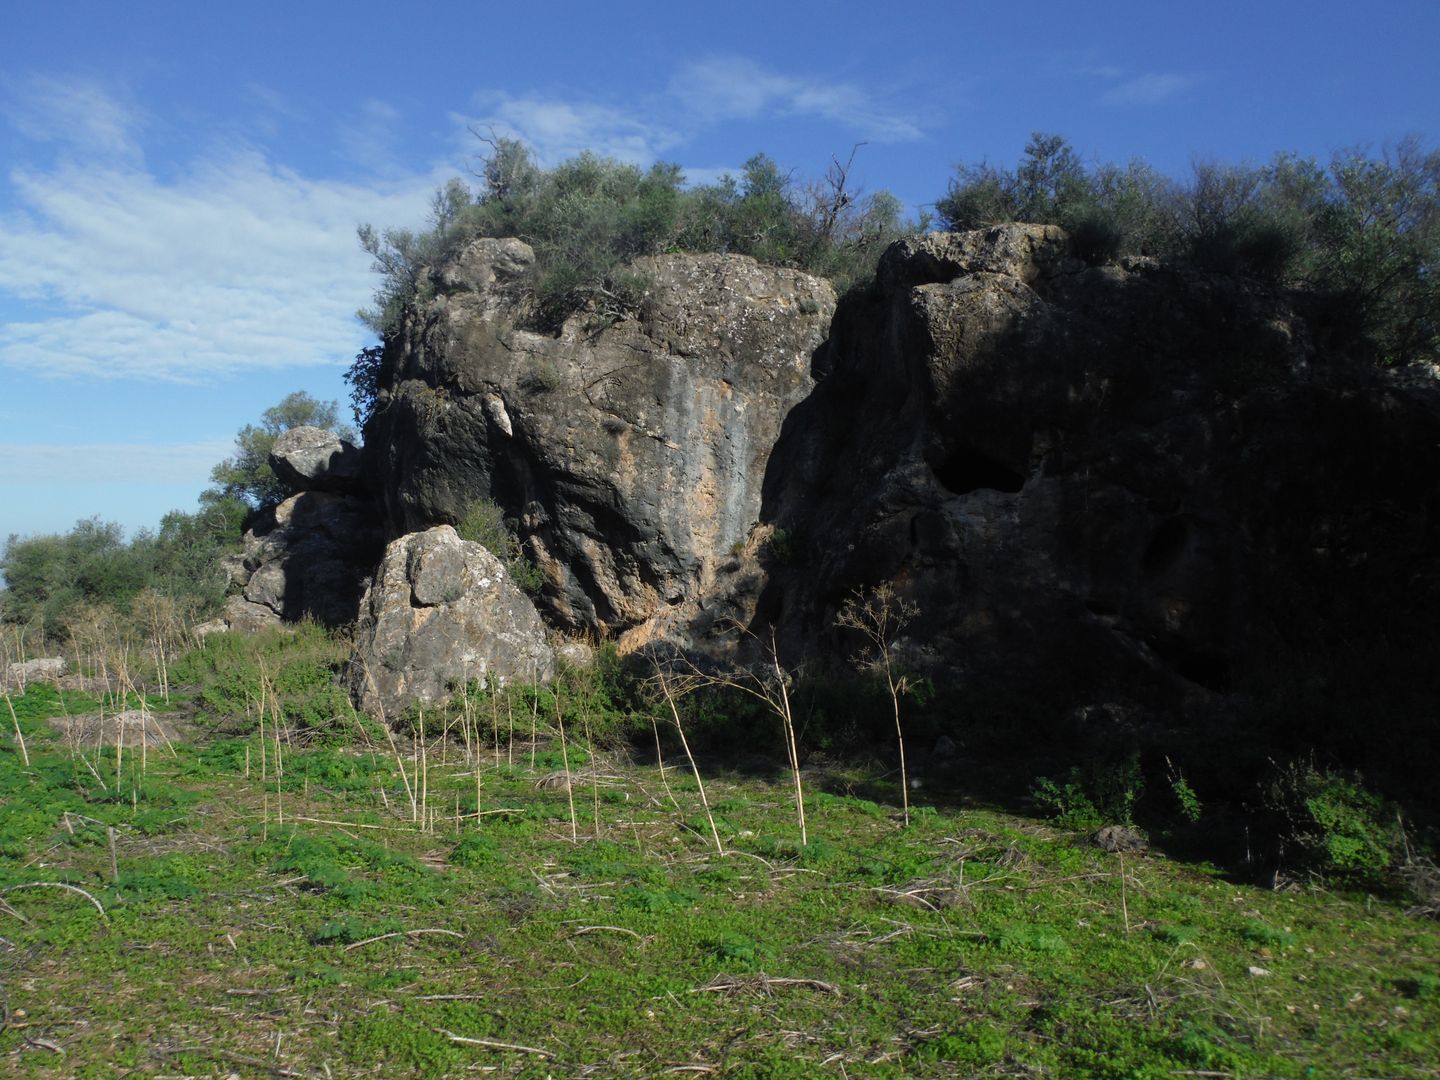 Zona más alta del Cerro Acebuchoso, donde se ubican dos de las cavidades